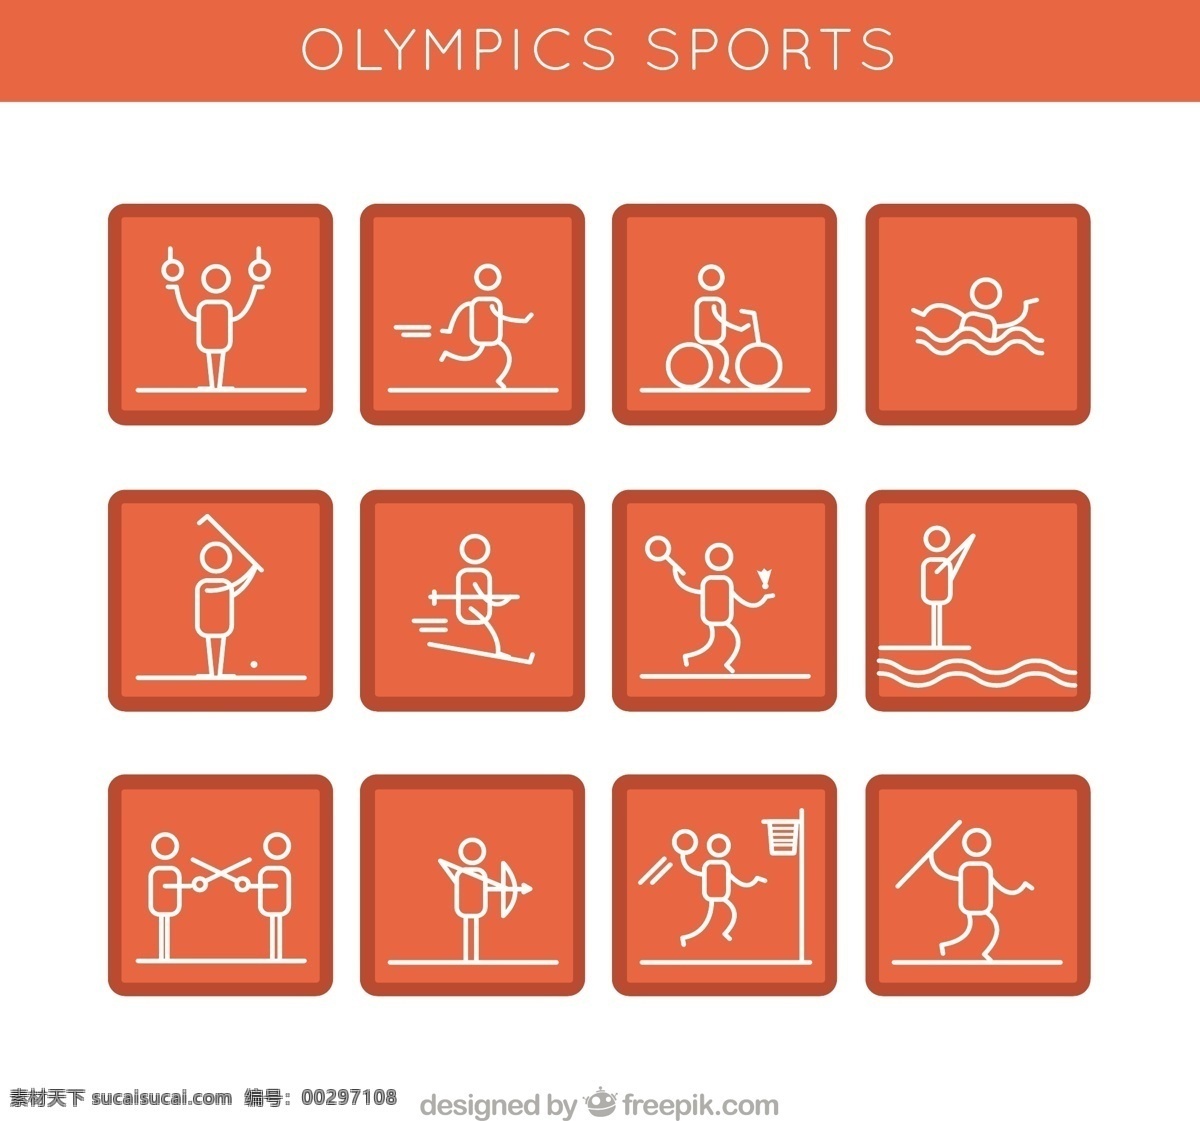 橙色头像运动 图标 运动 健身 健康 体育 高尔夫 头像 橙色 网球 滑雪 钓鱼 训练 游泳 骑自行车 生活方式 运动员 锻炼